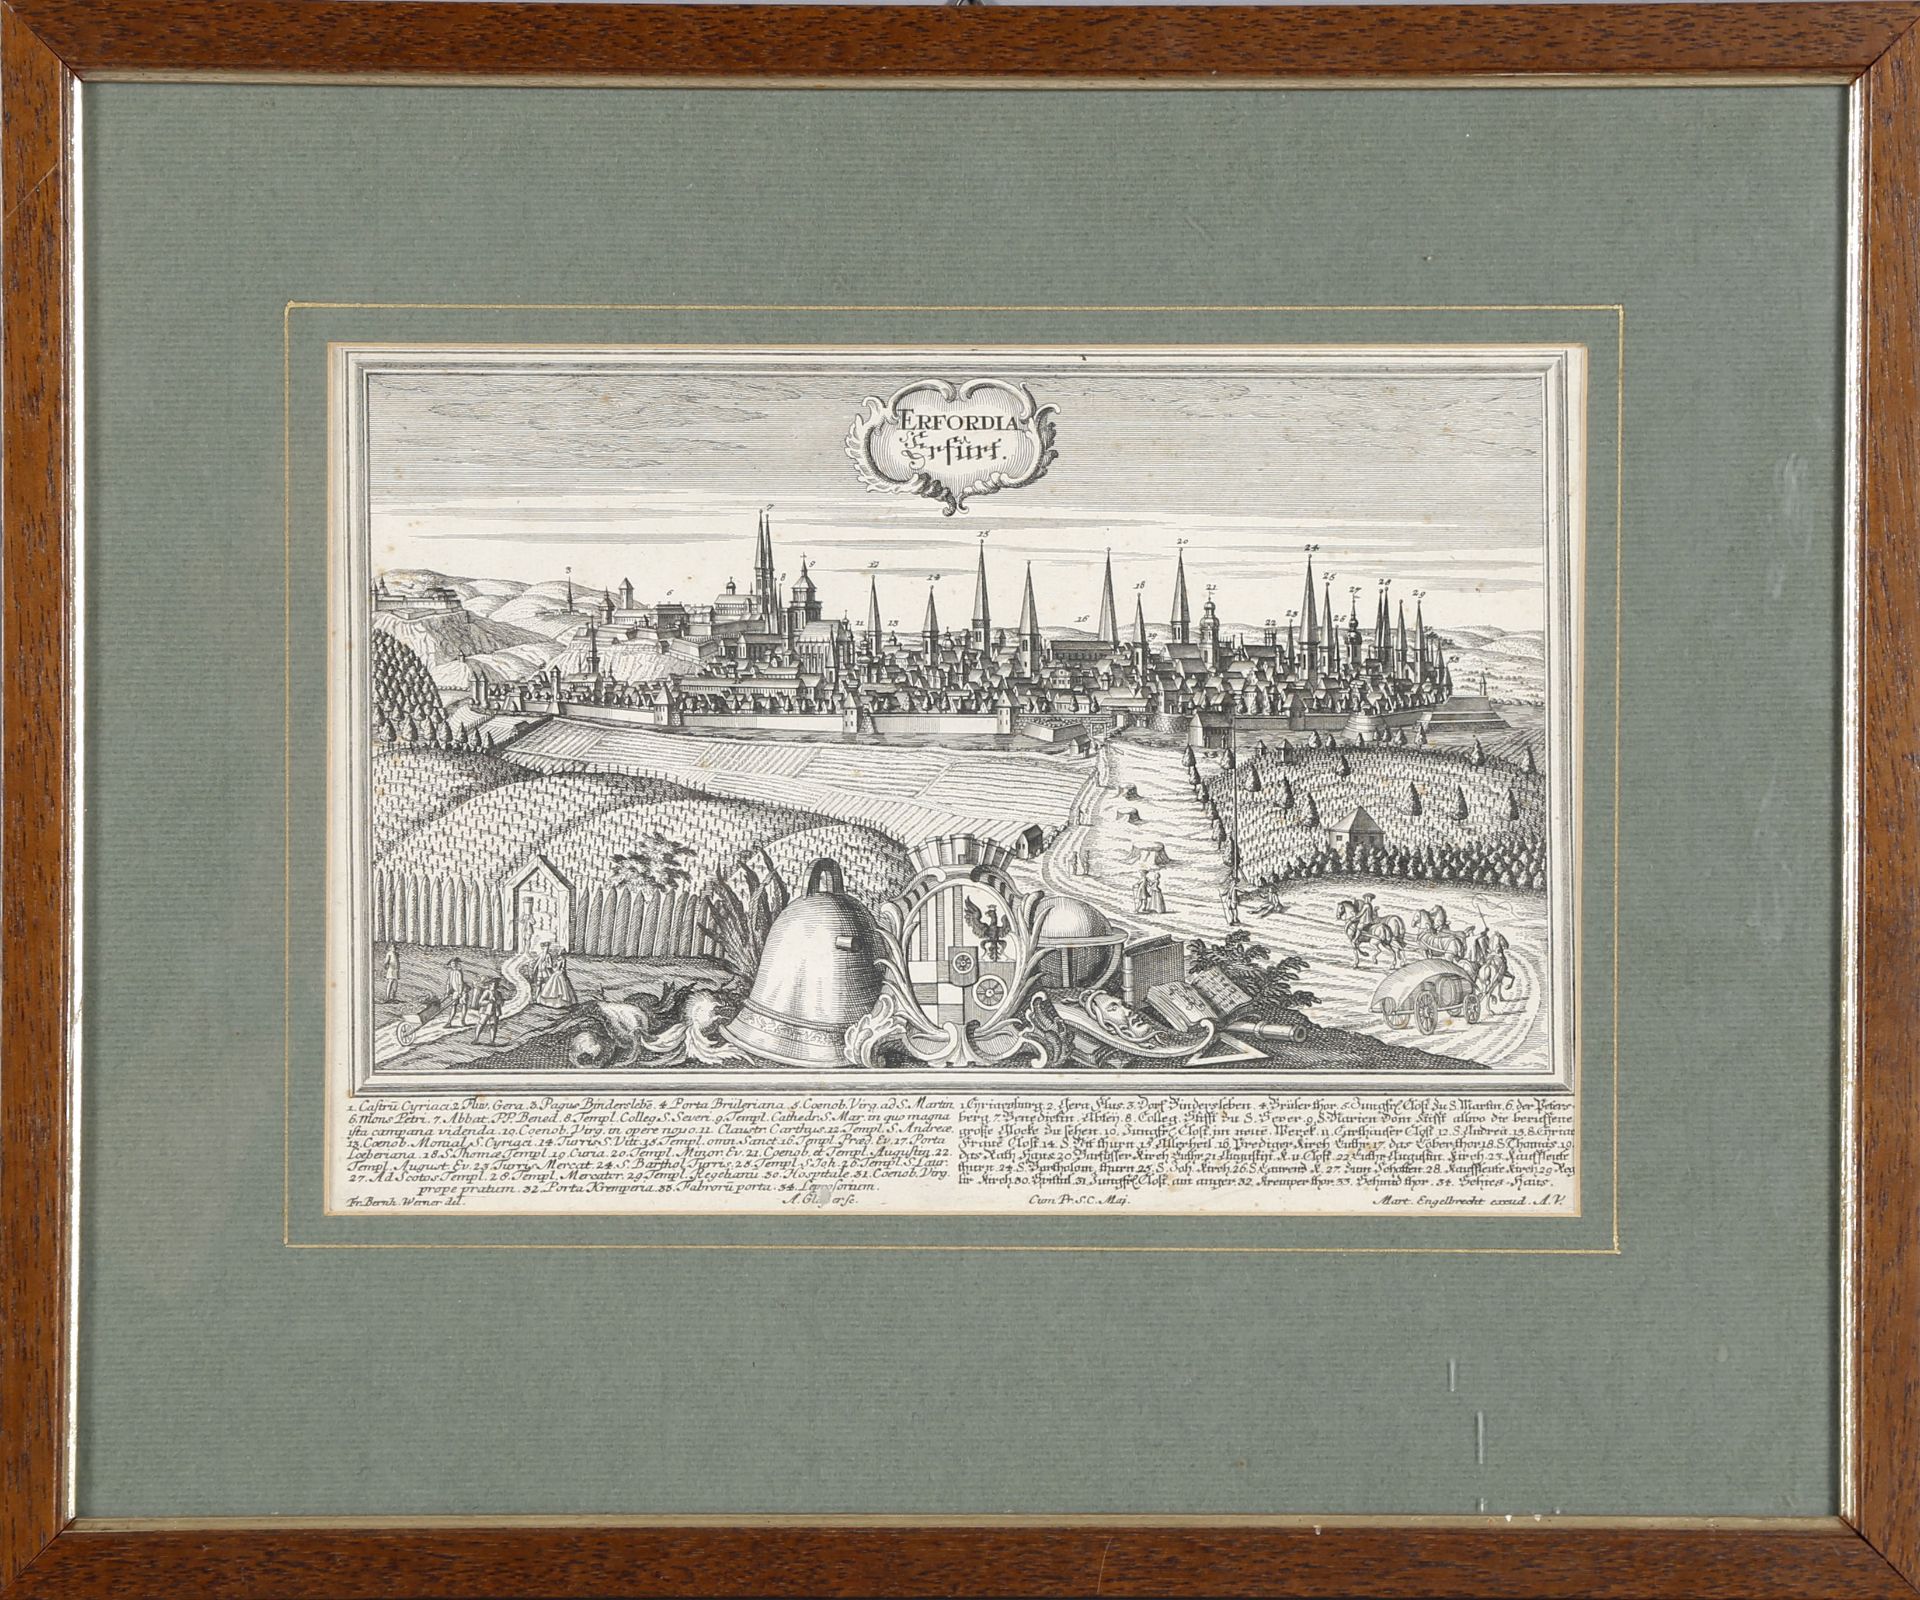 Ansicht von Erfurt, um 1740, Kupferstich von Alexander Gläßer nach einer Vorlage von Friedrich Bernh